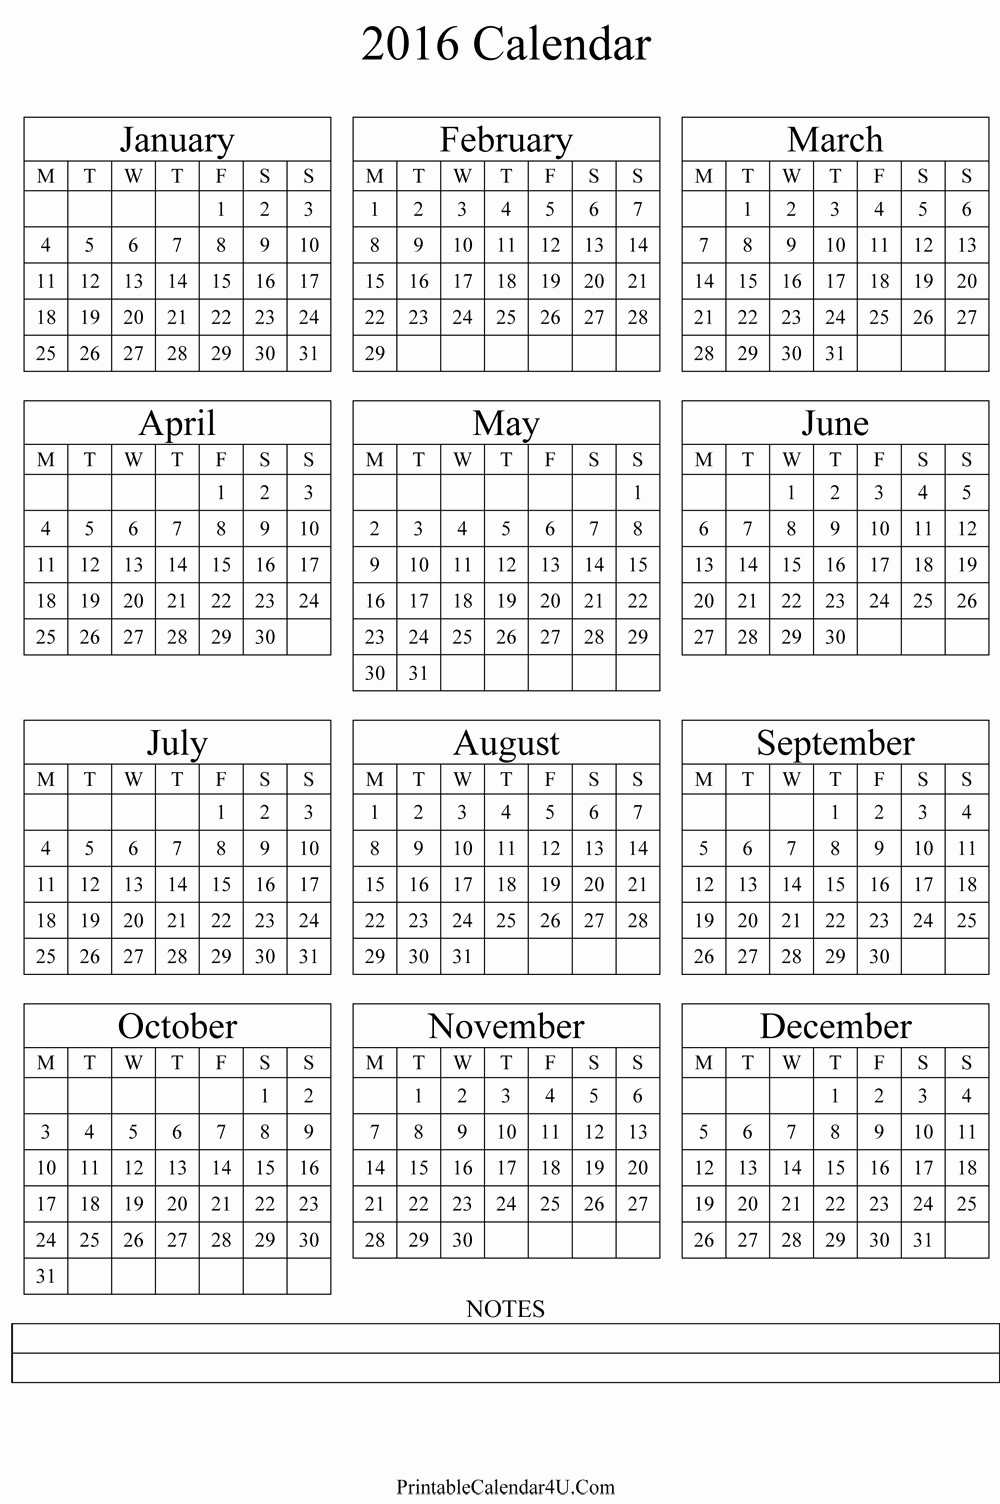 5 Year Calendar Starting 2016 Lovely Annual Calendar 2016